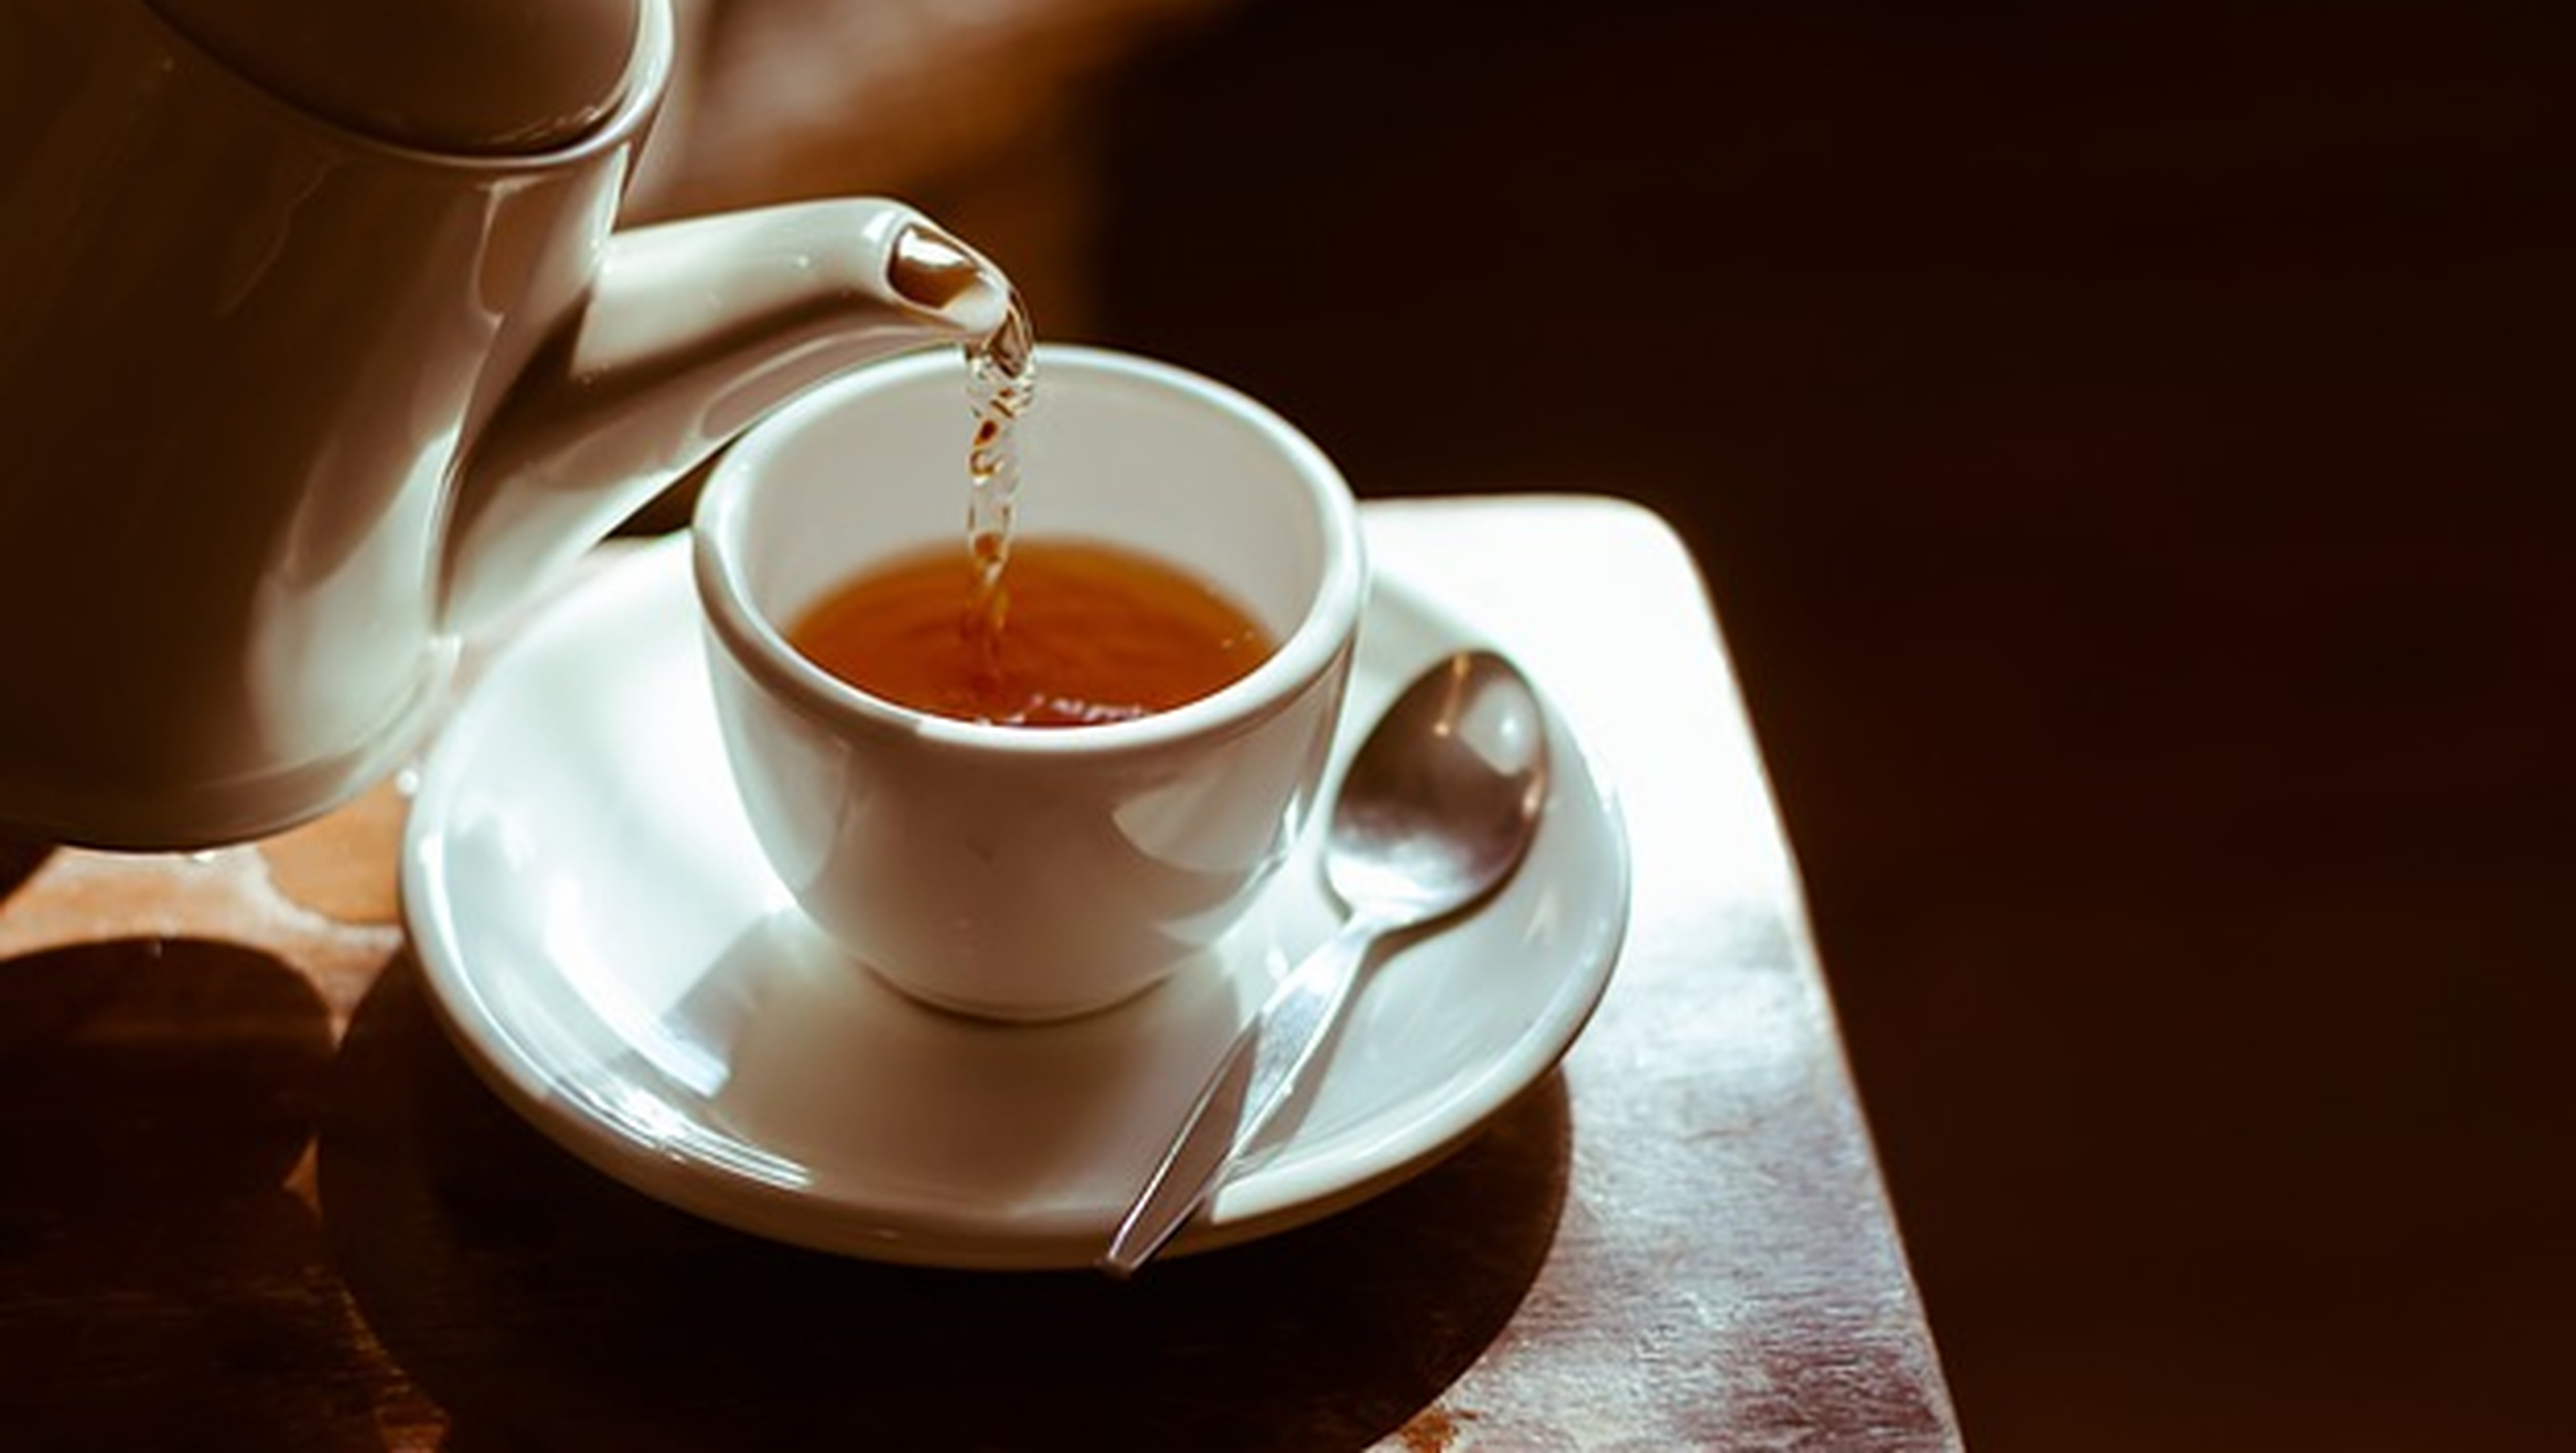 Beber té caliente puede provocar cáncer.